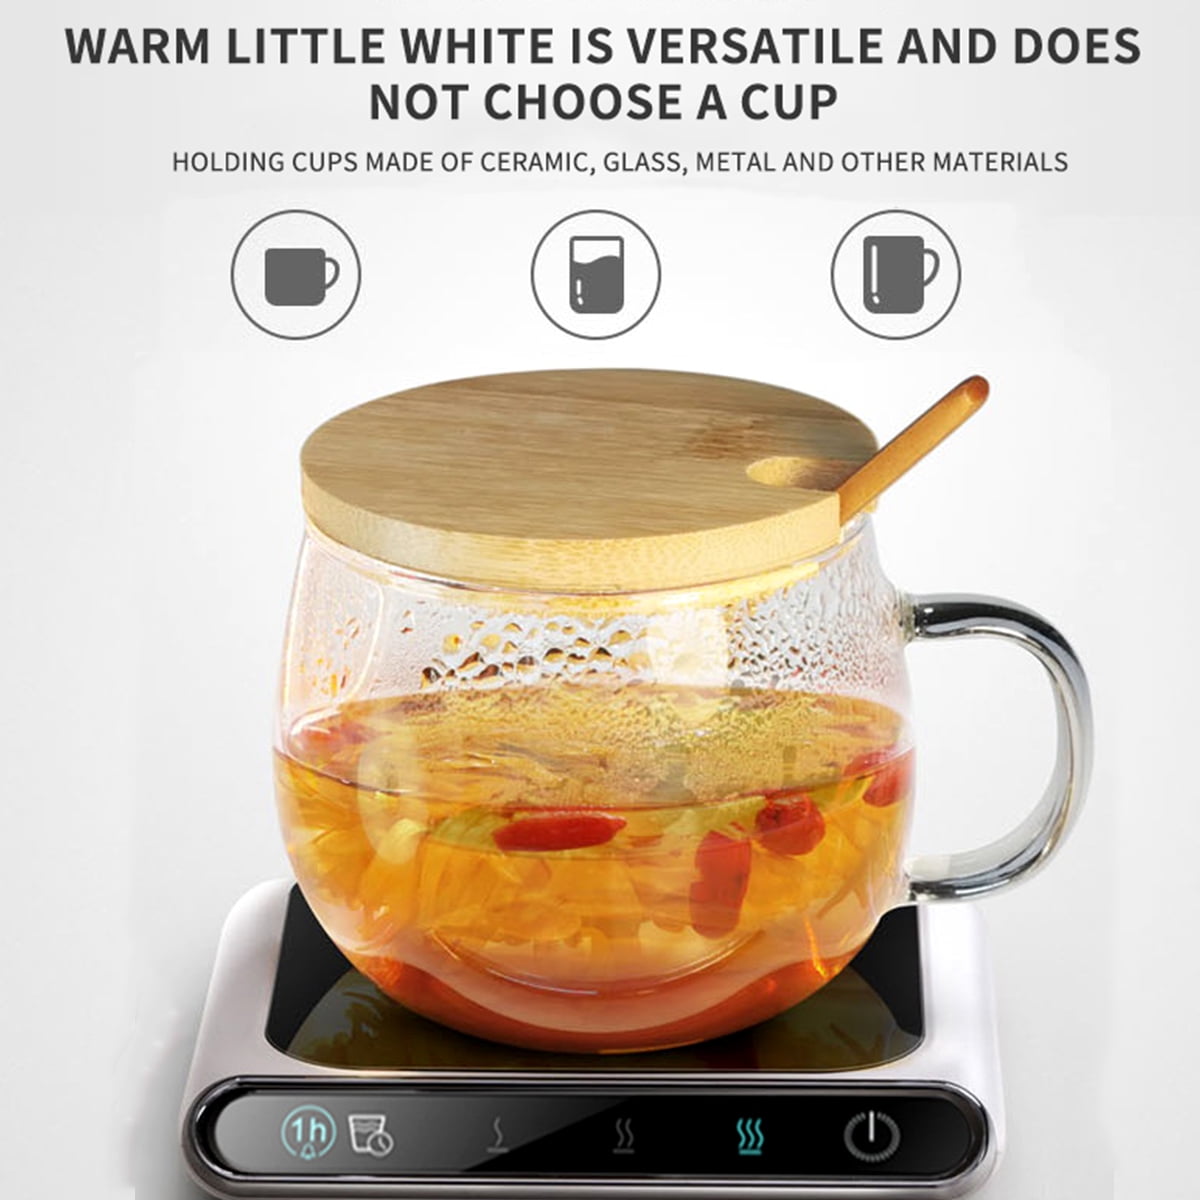 New Coffee Cup Warmer 3-Gear Adjustable Constant Temperature 55°C